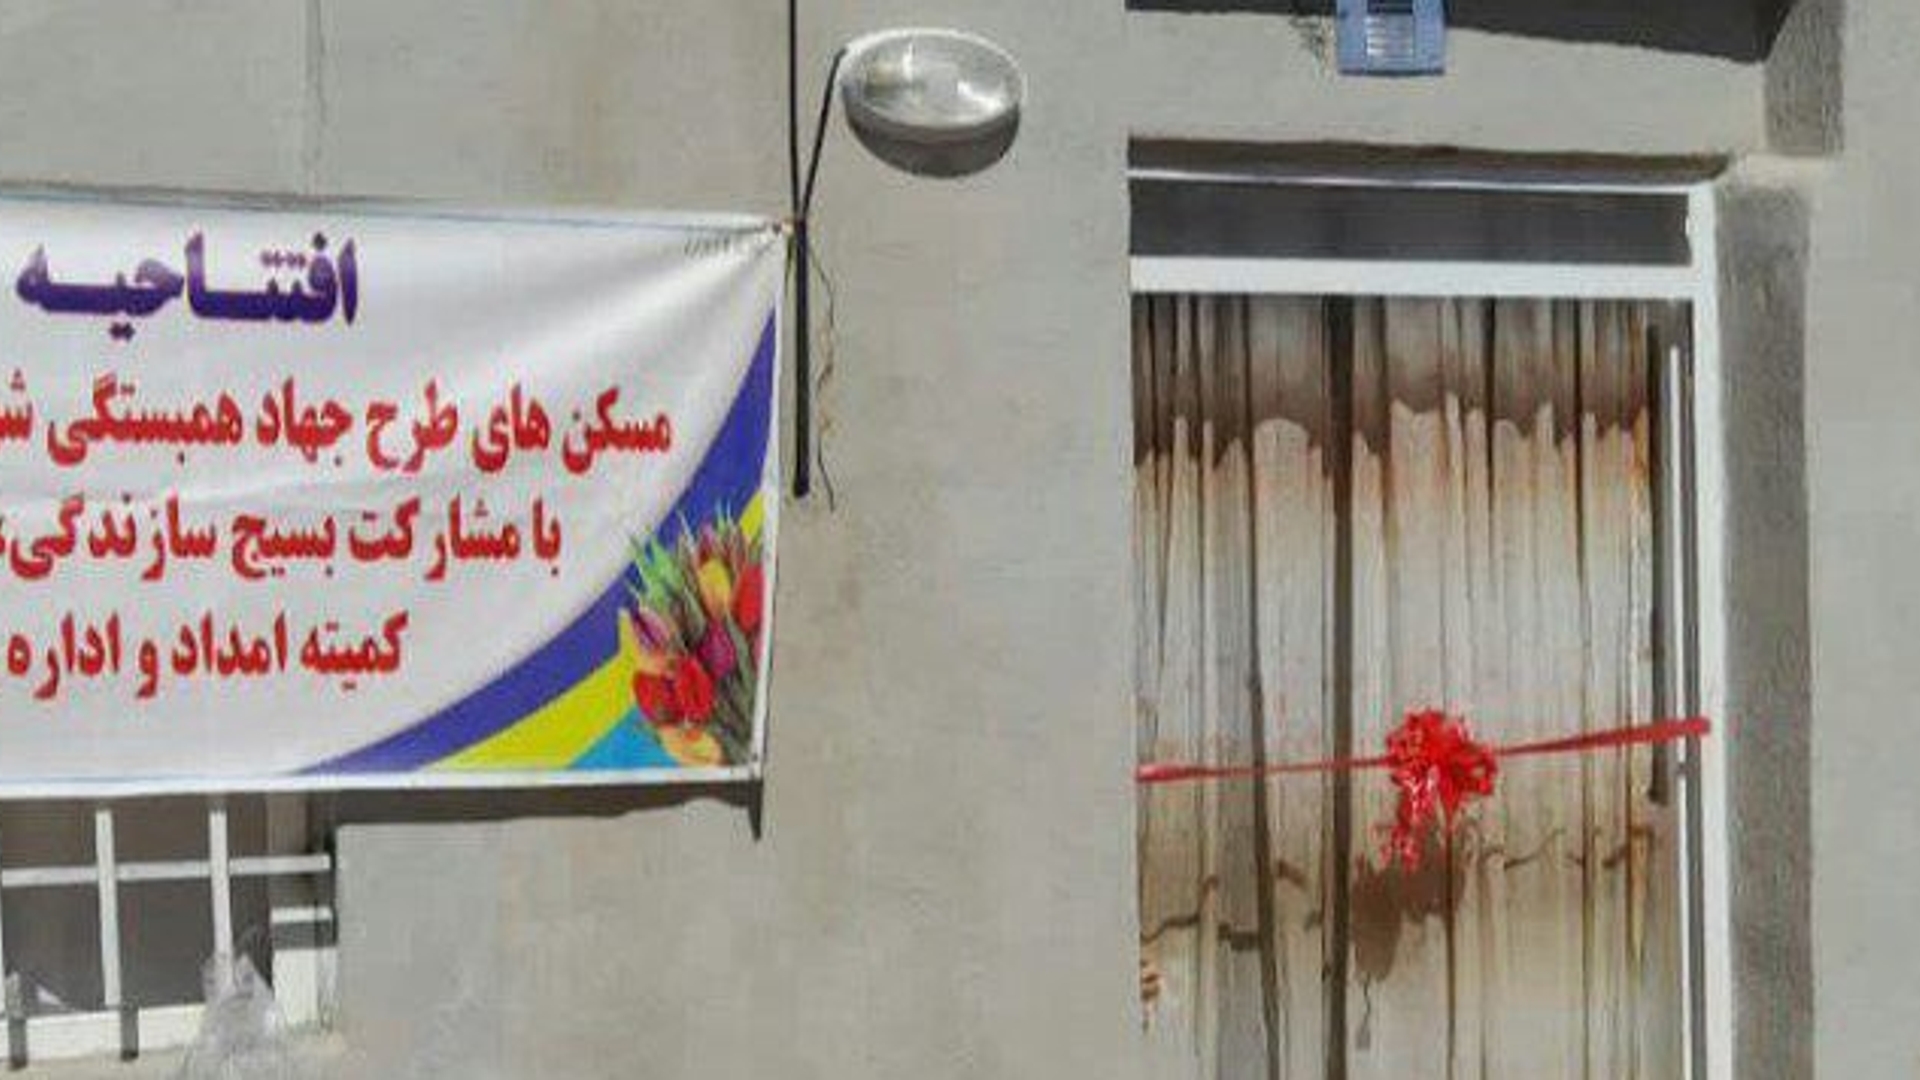 افتتاح چند واحدمسکن مدجویان درشهرستان خنداب